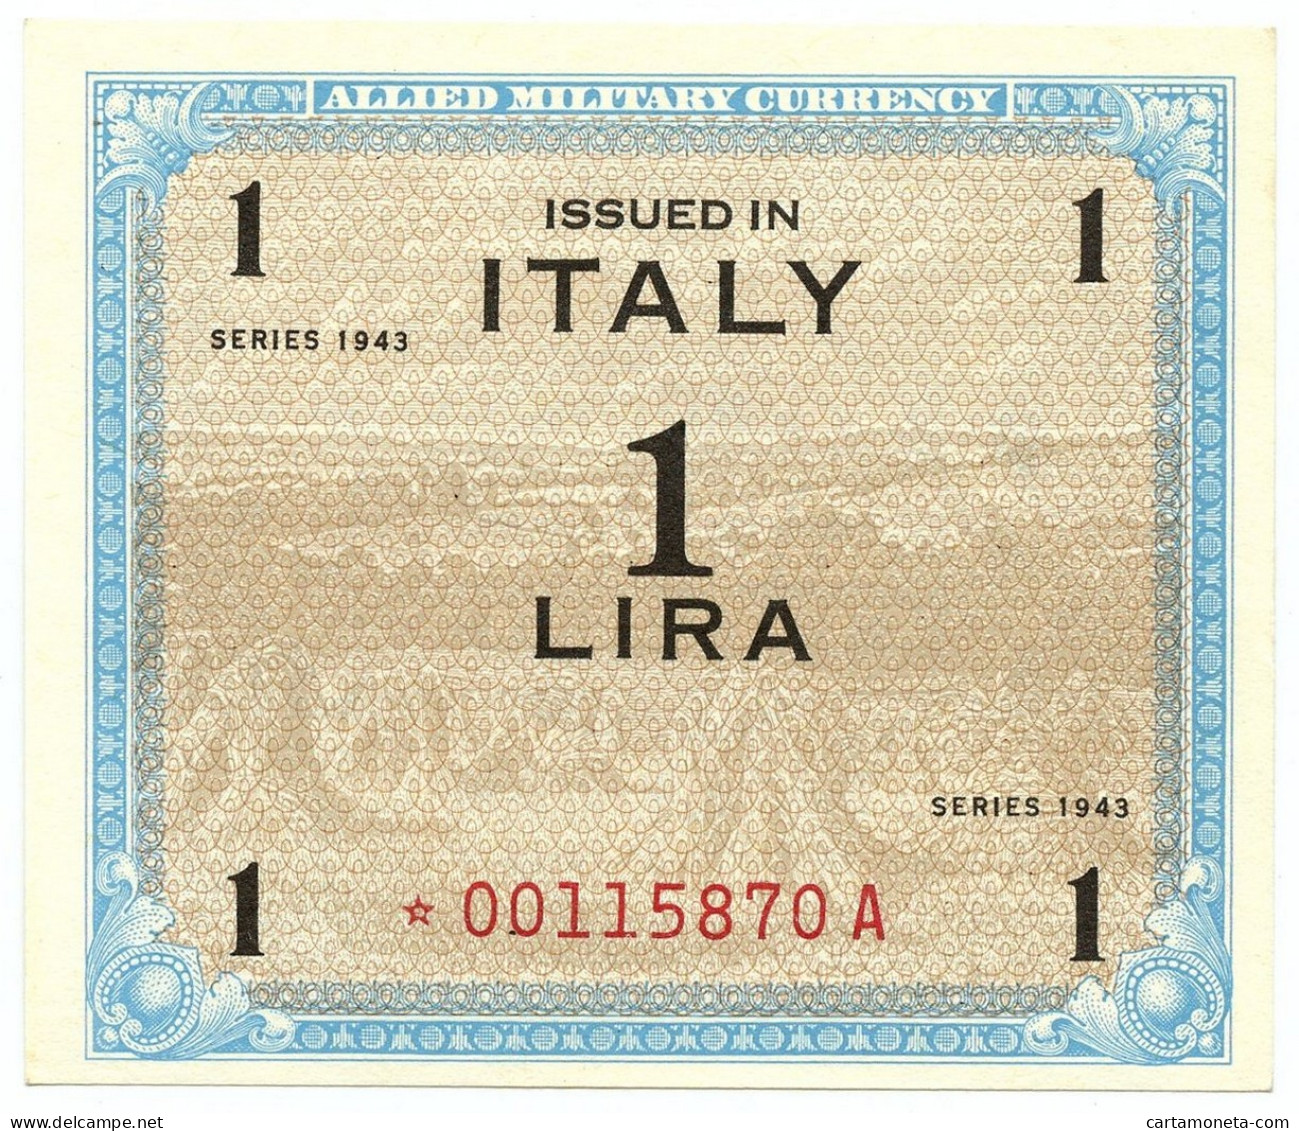 1 LIRA OCCUPAZIONE AMERICANA IN ITALIA MONOLINGUA ASTERISCO 1943 QFDS - Occupation Alliés Seconde Guerre Mondiale